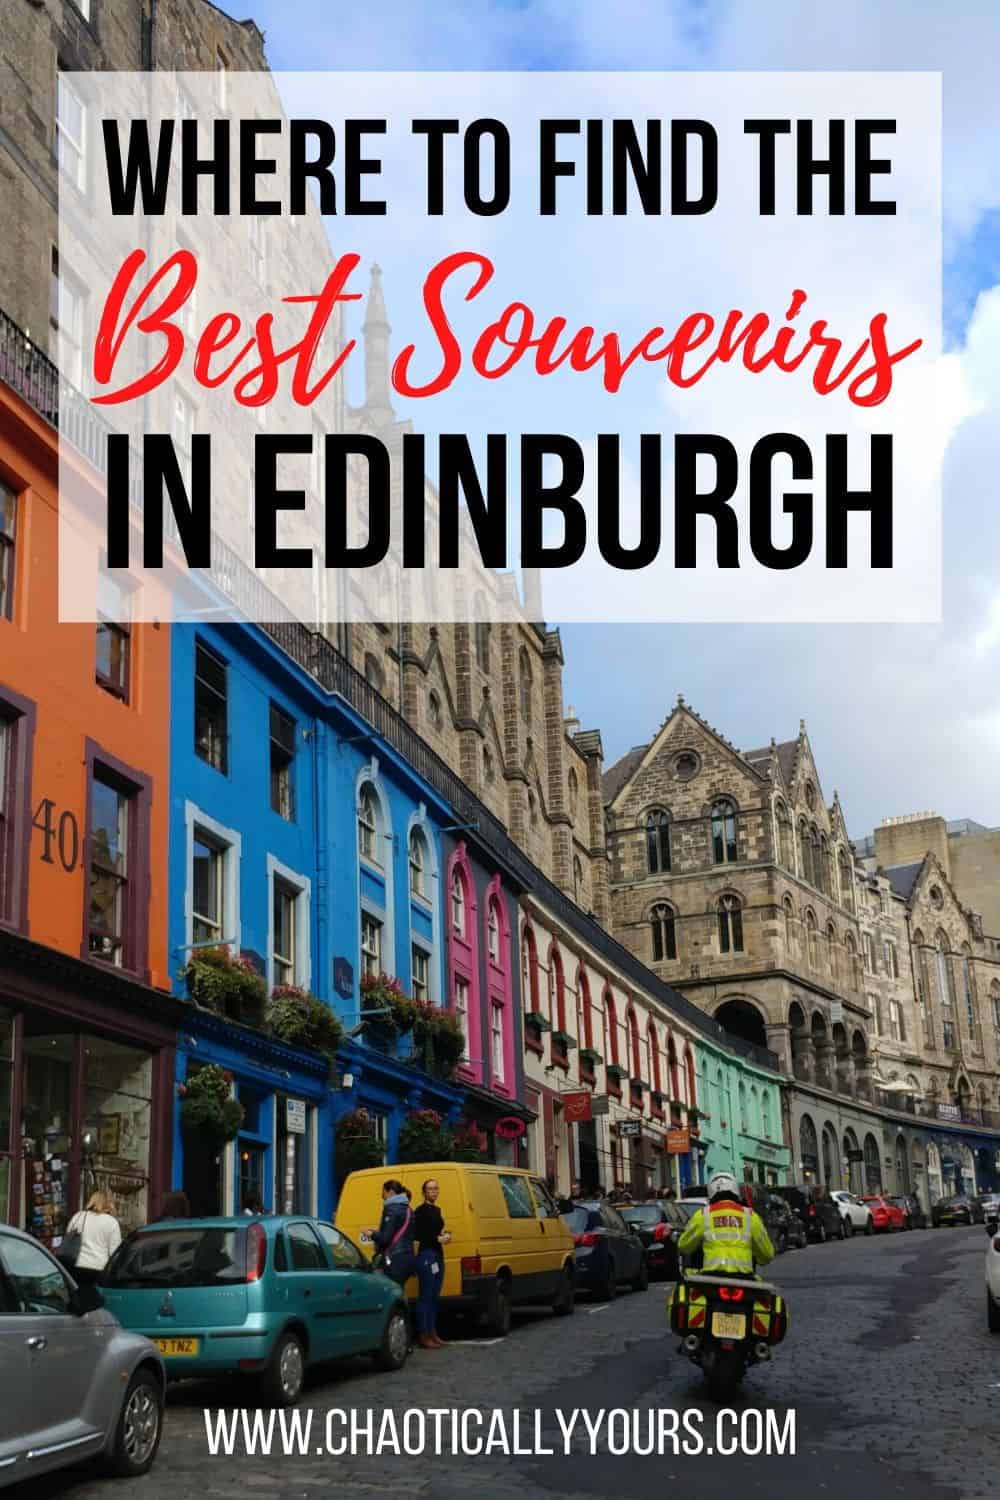 Where you can find the best souvenirs in Edinburgh, Scotland